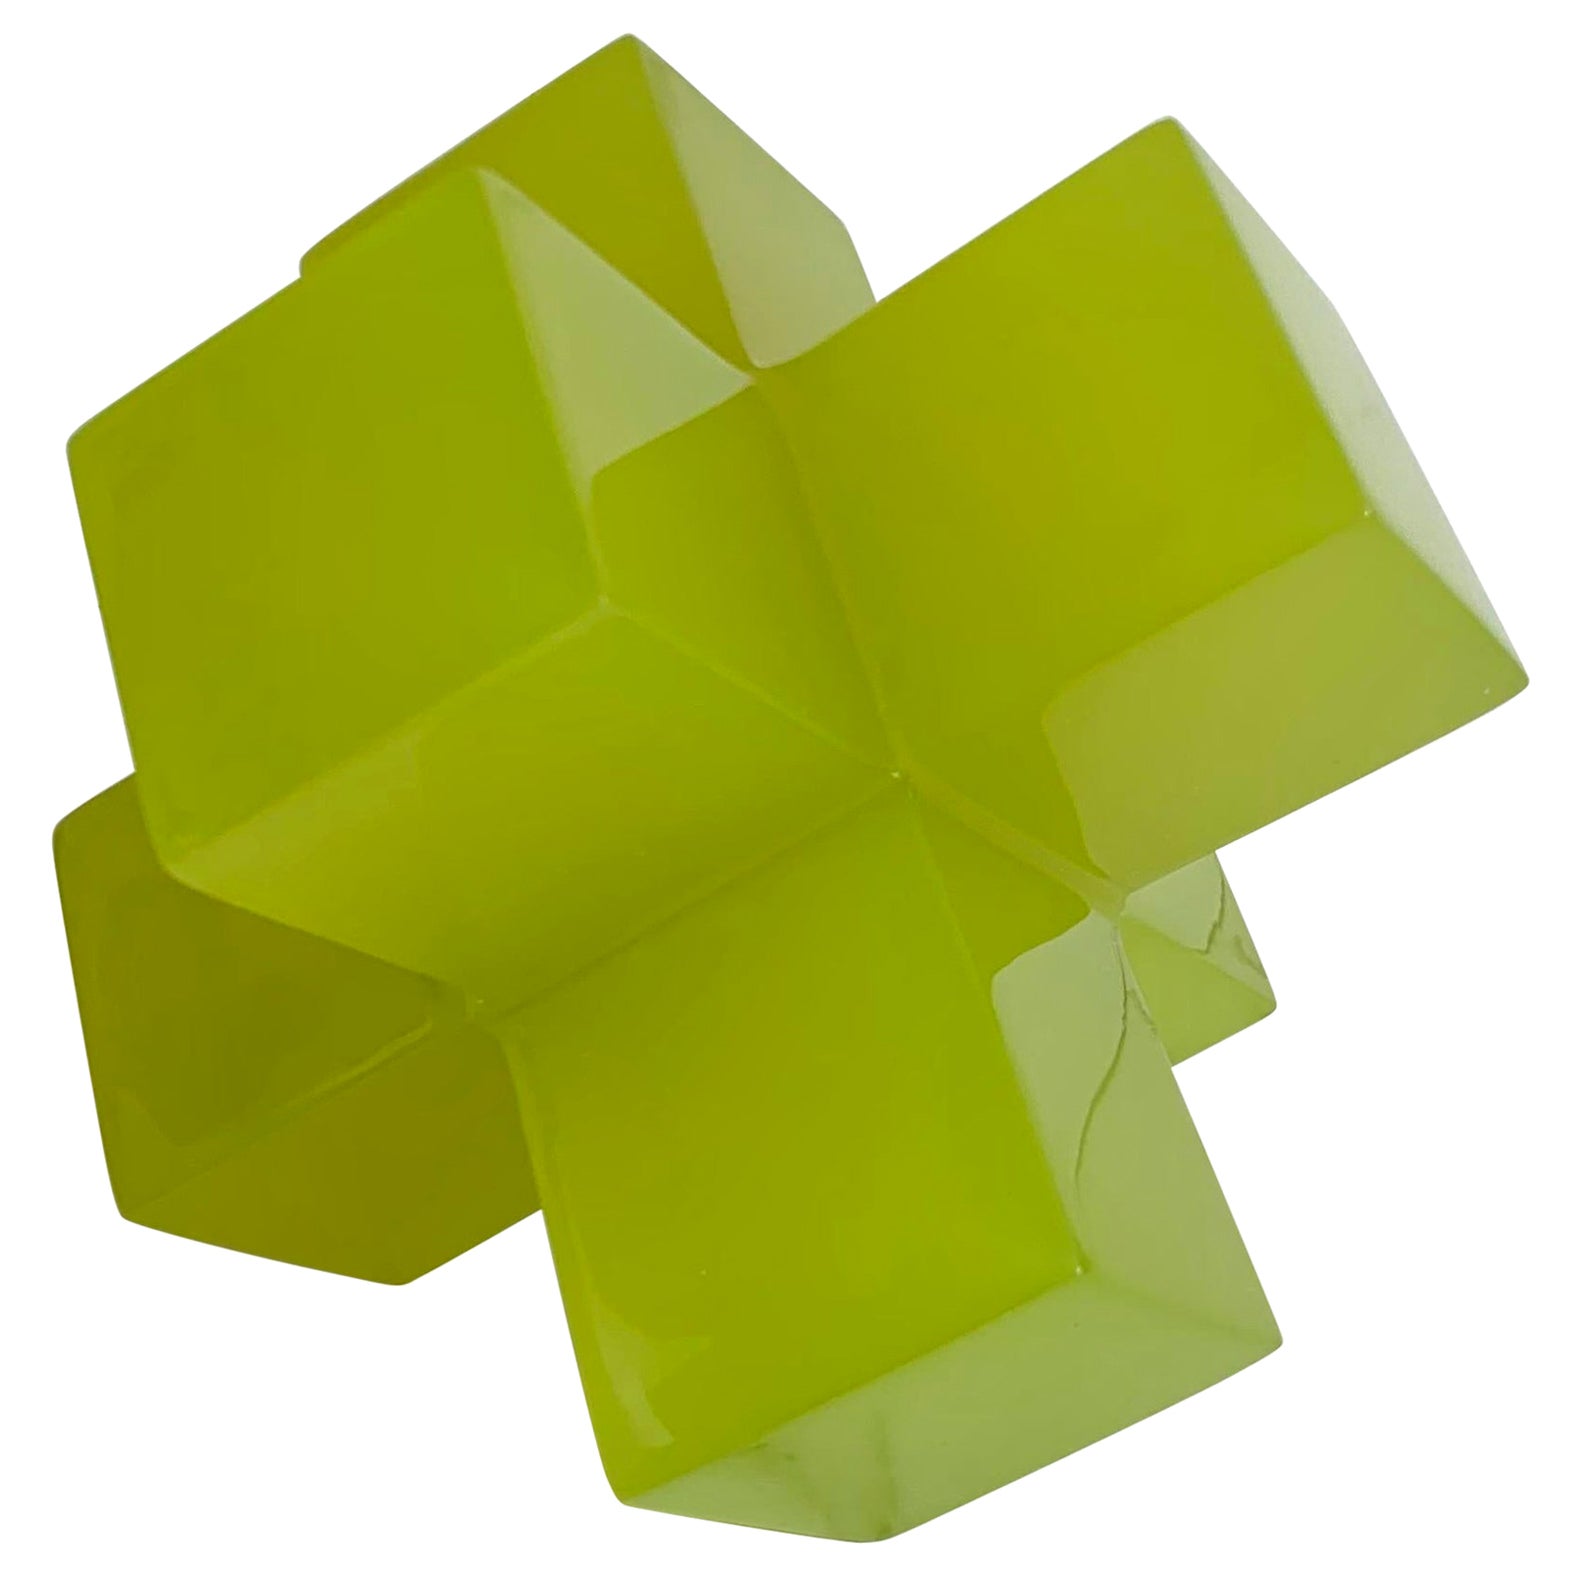 Sculpture géométrique en résine polie vert citron par Paola Valle